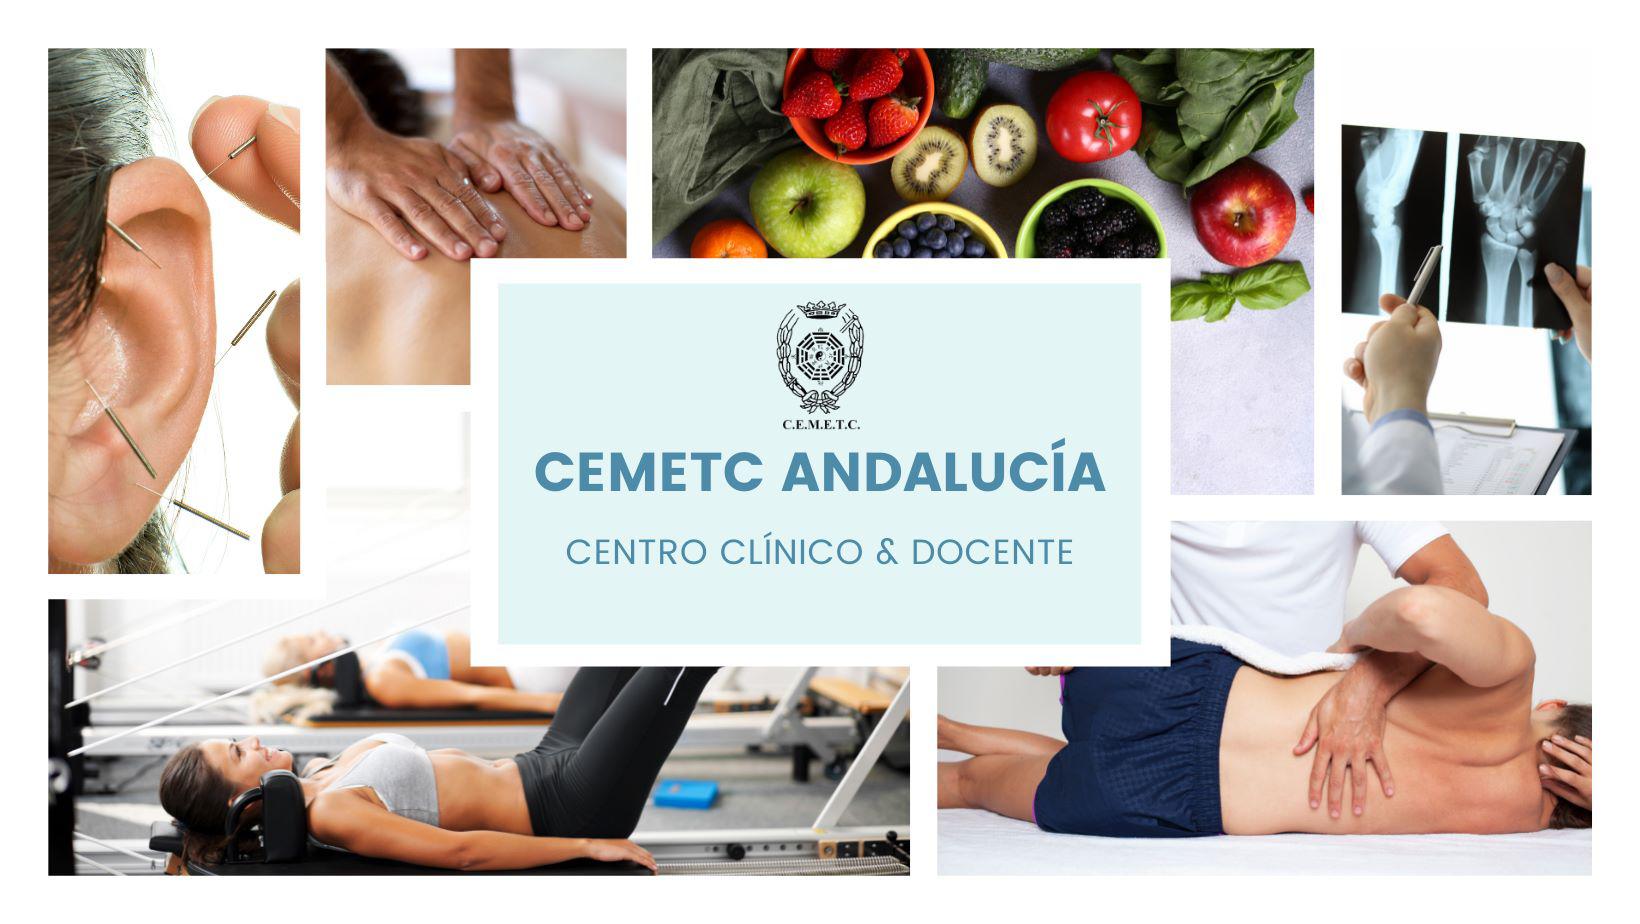 Images Centro Clínico y Docente Cemetc Andalucía